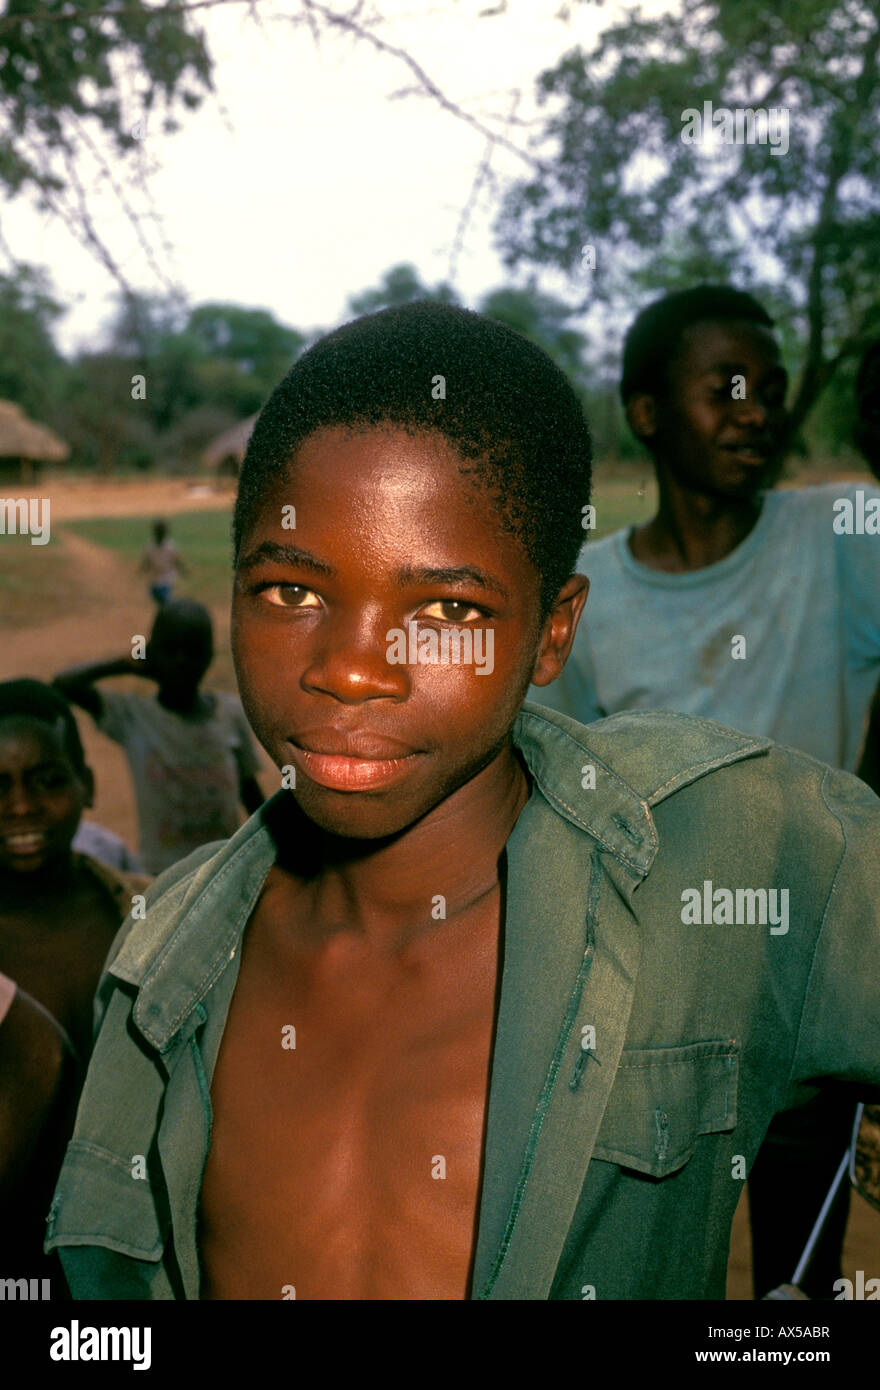 Peuple du Zimbabwe, jeune garçon, village de Mahenye, la province de Manicaland, au Zimbabwe, l'Afrique Banque D'Images